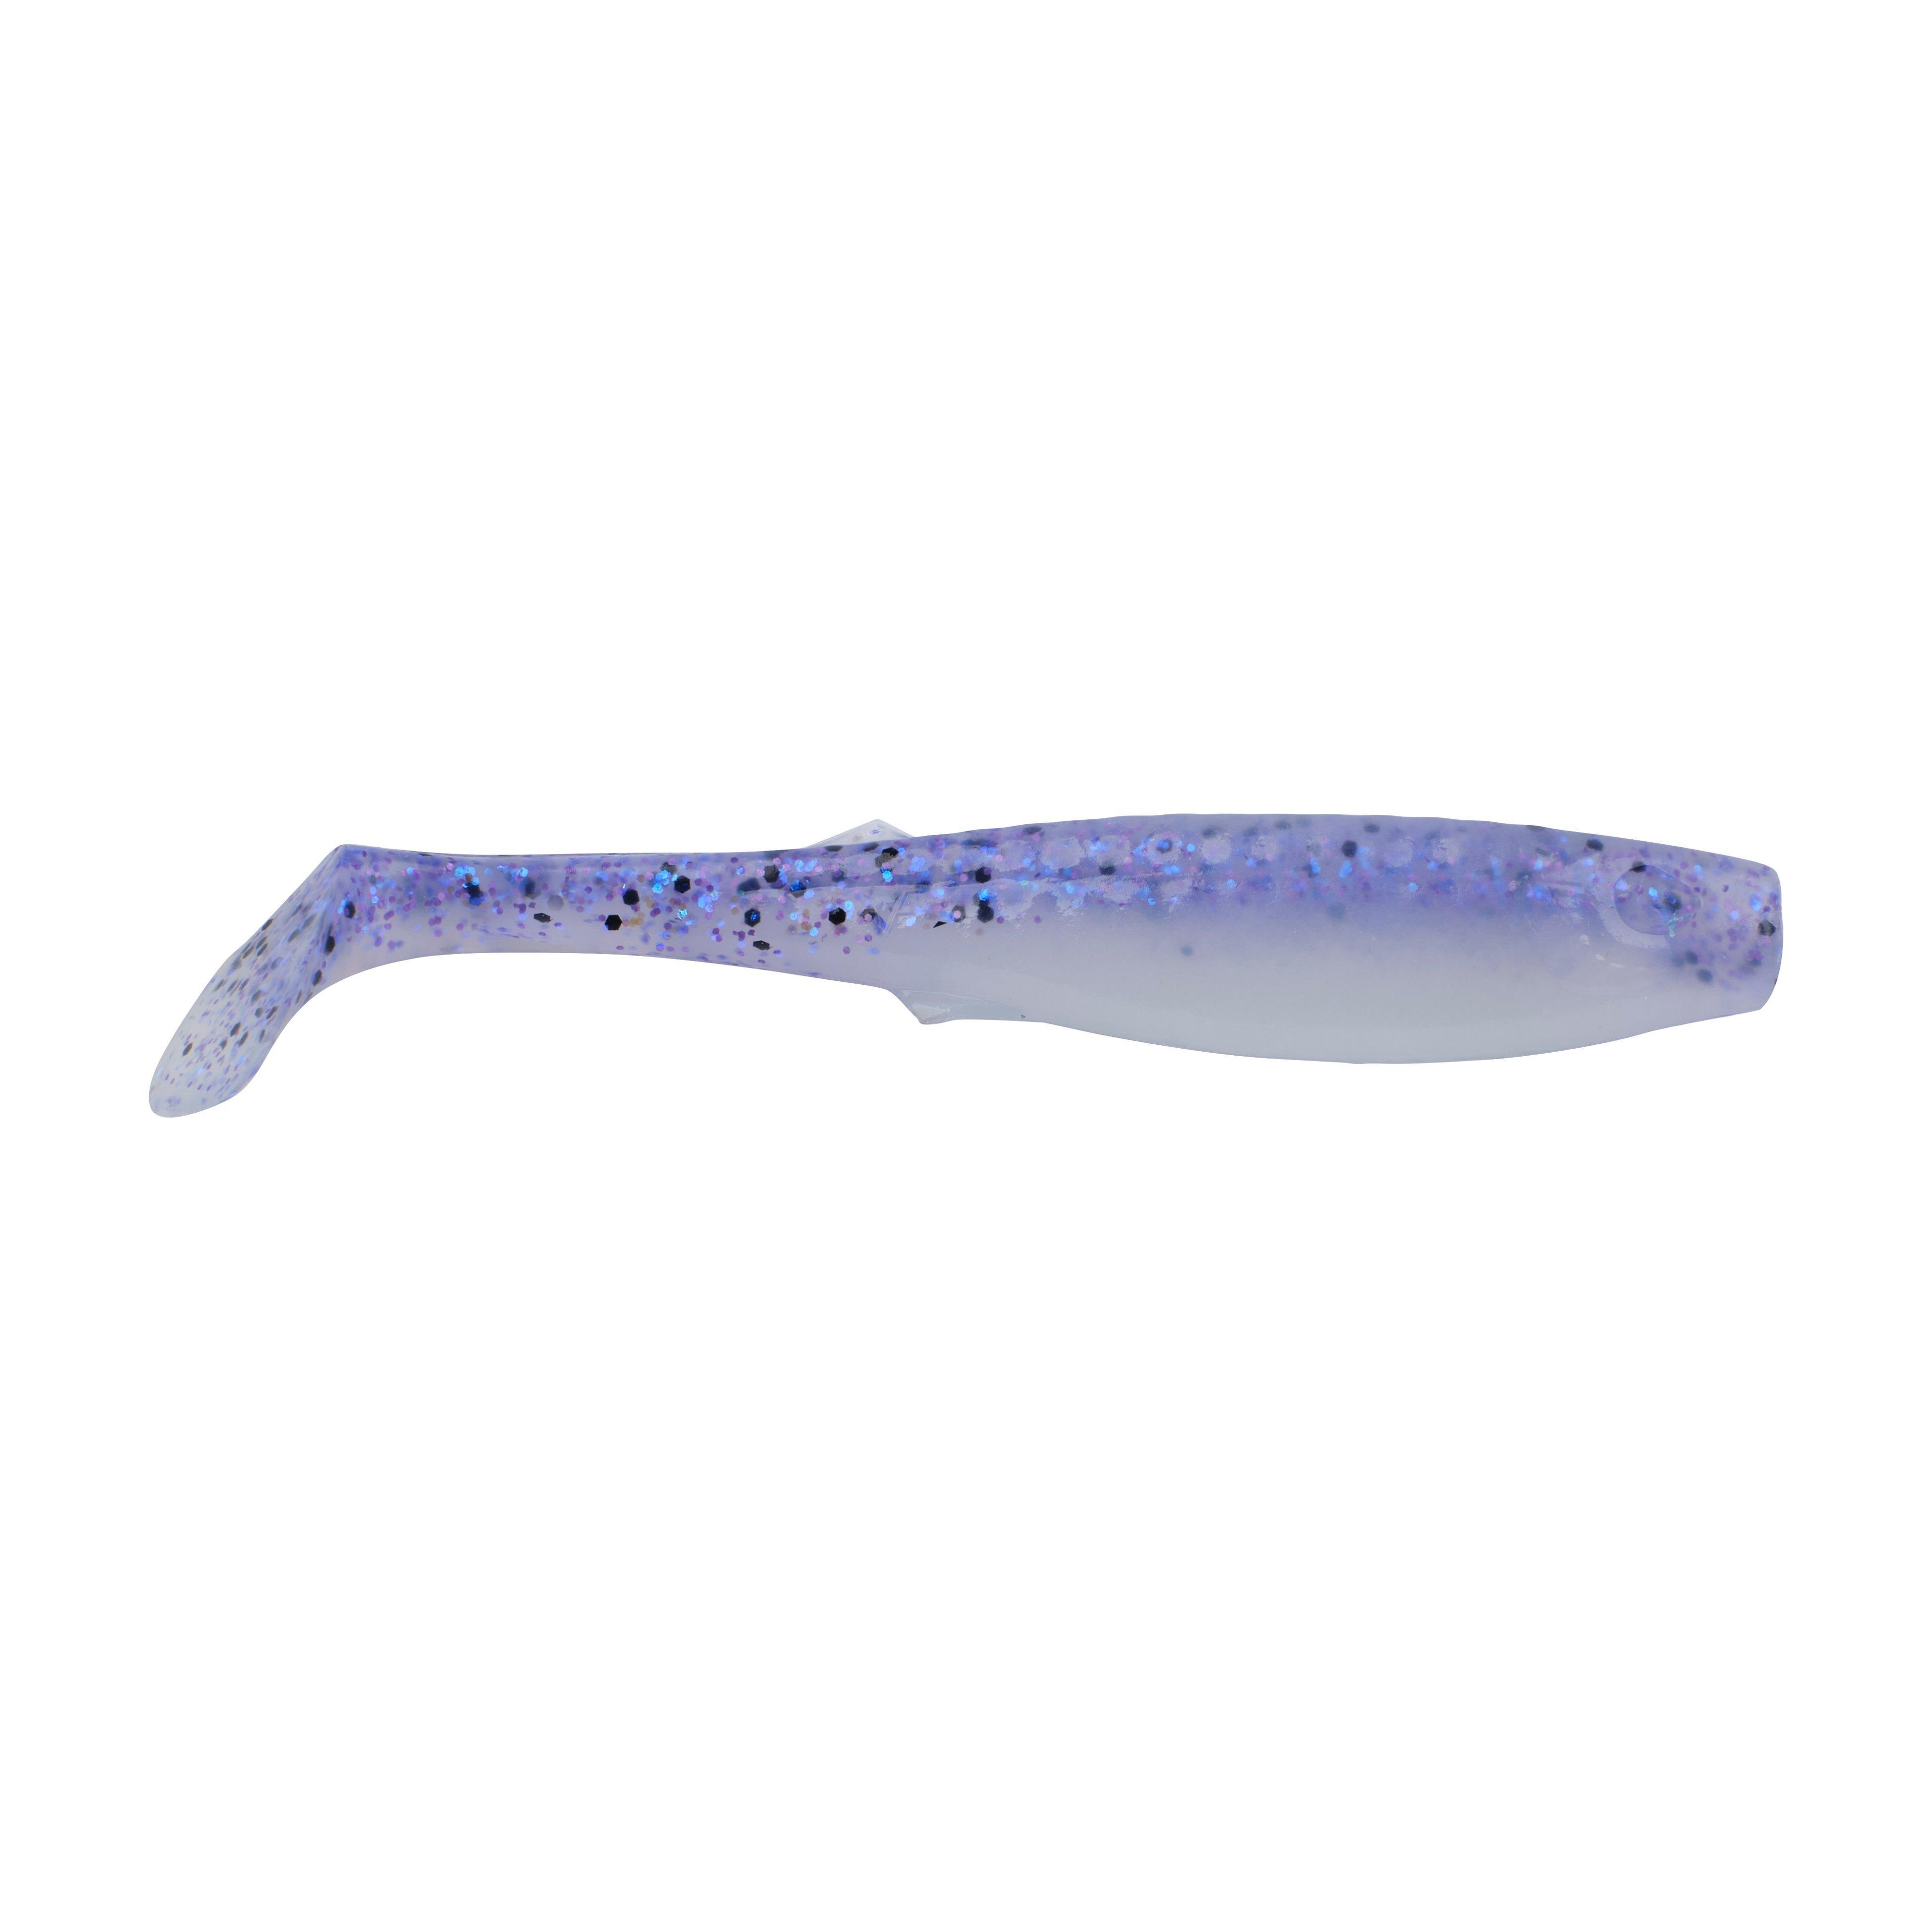 Gulp!® Saltwater Paddleshad - Berkley® Fishing US